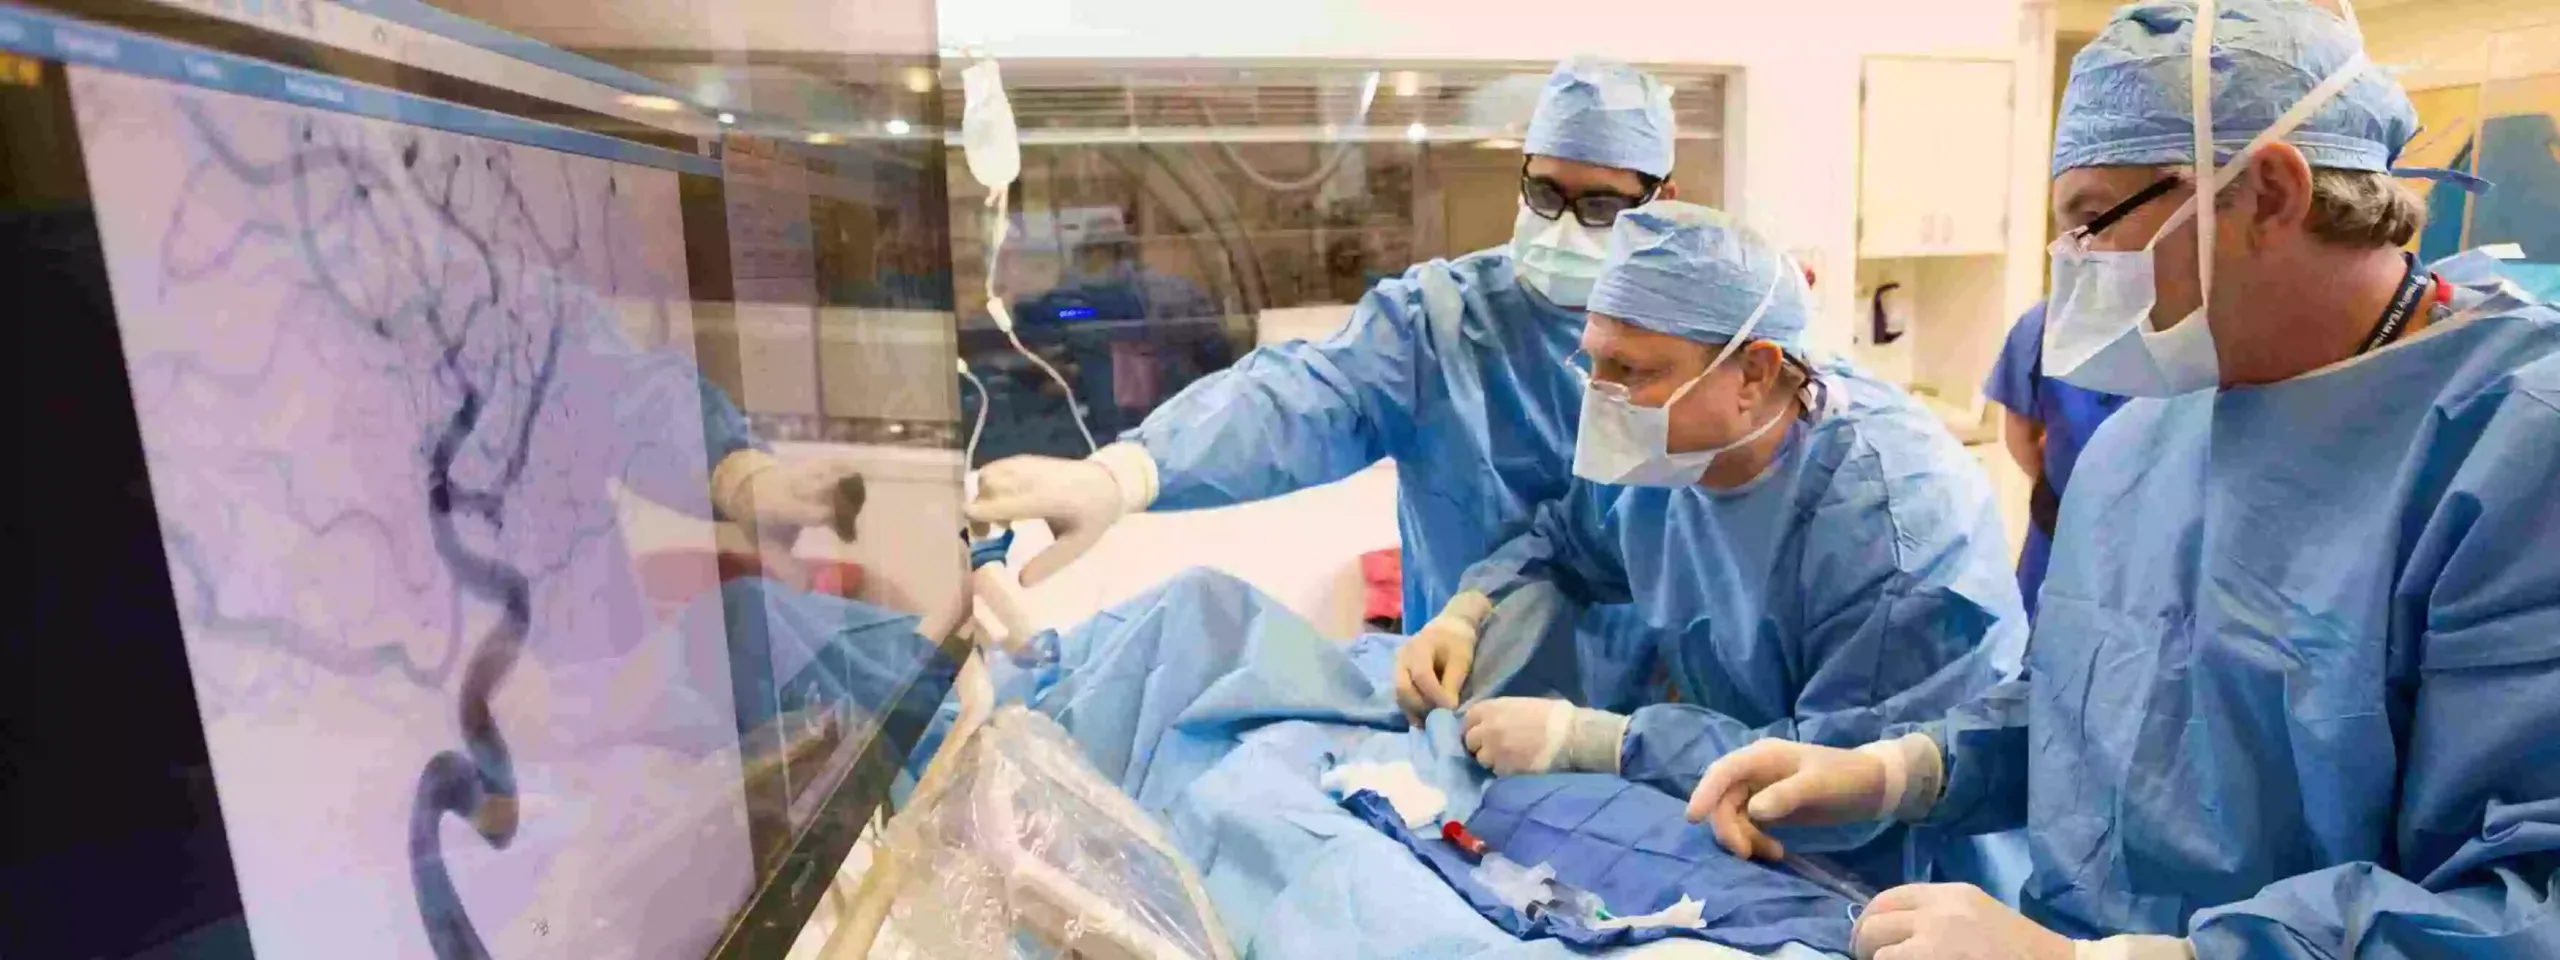 Karotis endarterektomi Türkiye'de en yetenekli cerrahlar tarafından en son cerrahi teknikler kullanılarak yapılmaktadır.